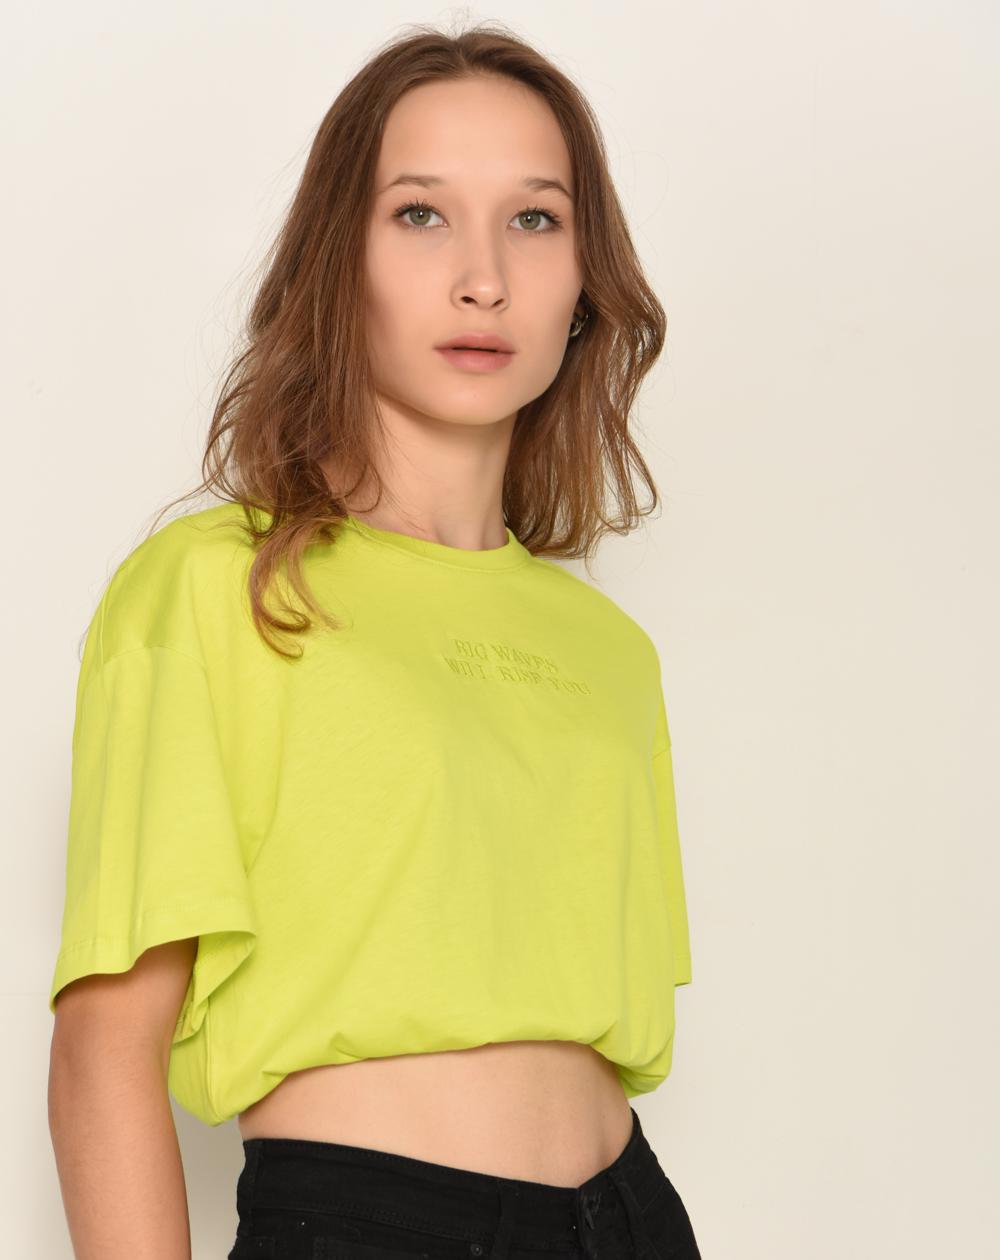 Fıstık Yeşil Yazı Detaylı T-shirt P0959 – DK8